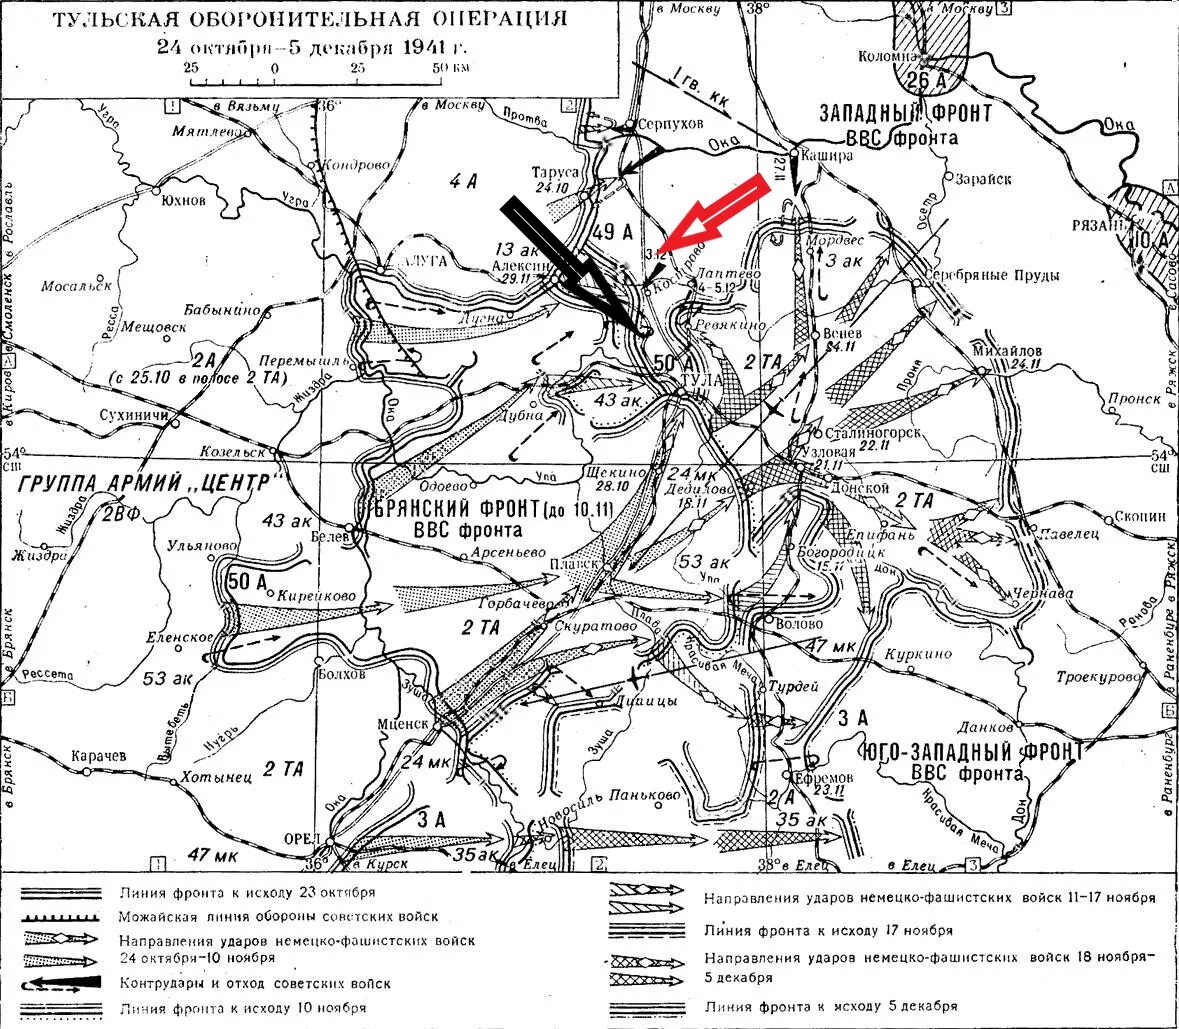 Тульская оборонительная операция 1941 года карта боевых. Тульская оборонительная операция 1941 года карта. Тульская оборонительная операция 24 октября-5 декабря 1941. Оборона Тулы в 1941 году карта. 10 октября 1941